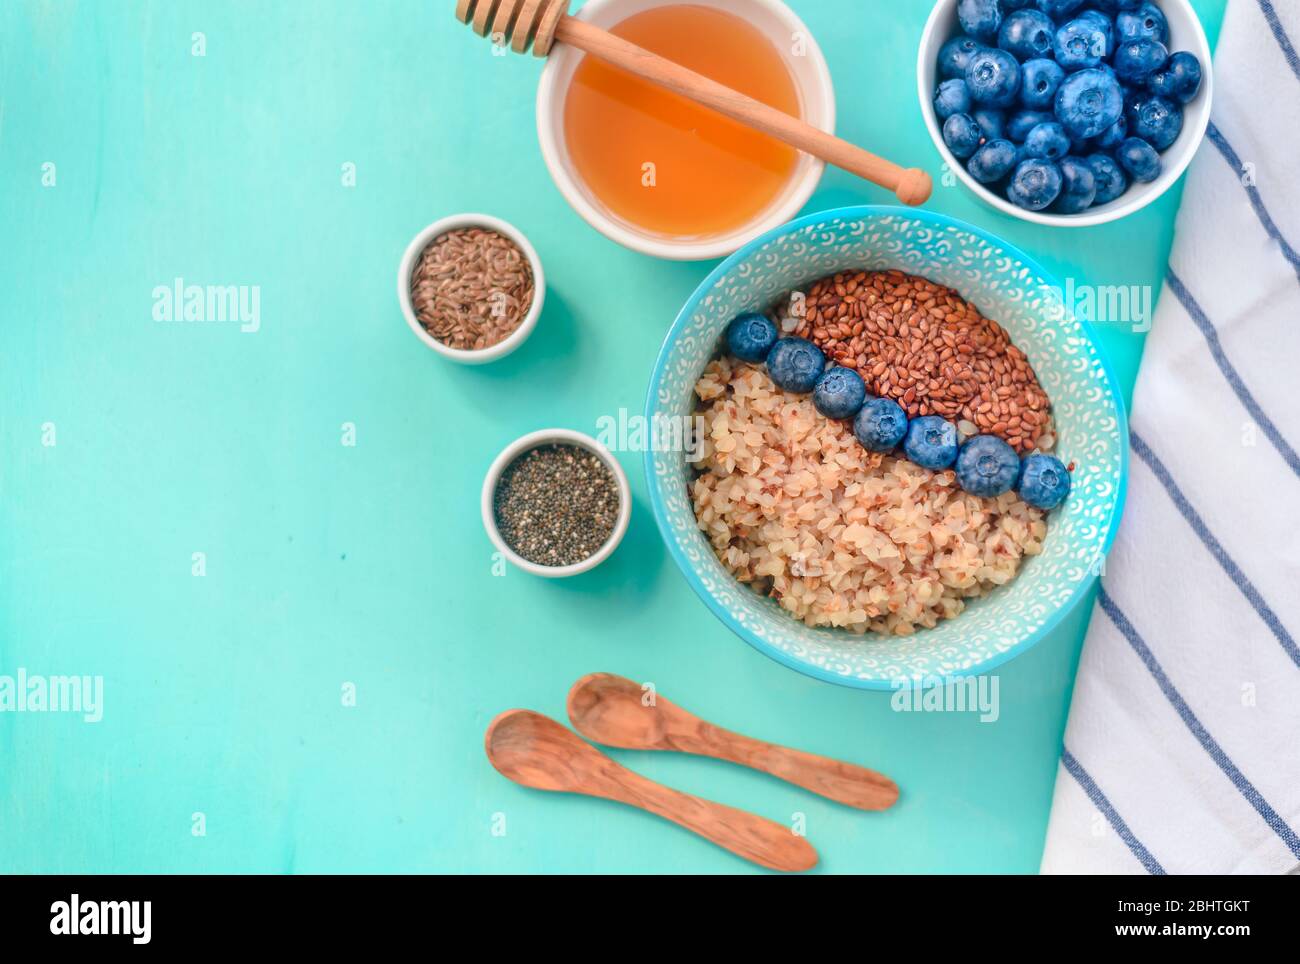 El alforfón gachas de avena en un recipiente con semillas de lino y arándanos. oncept alimentos saludables, desintoxicación, dieta Foto de stock